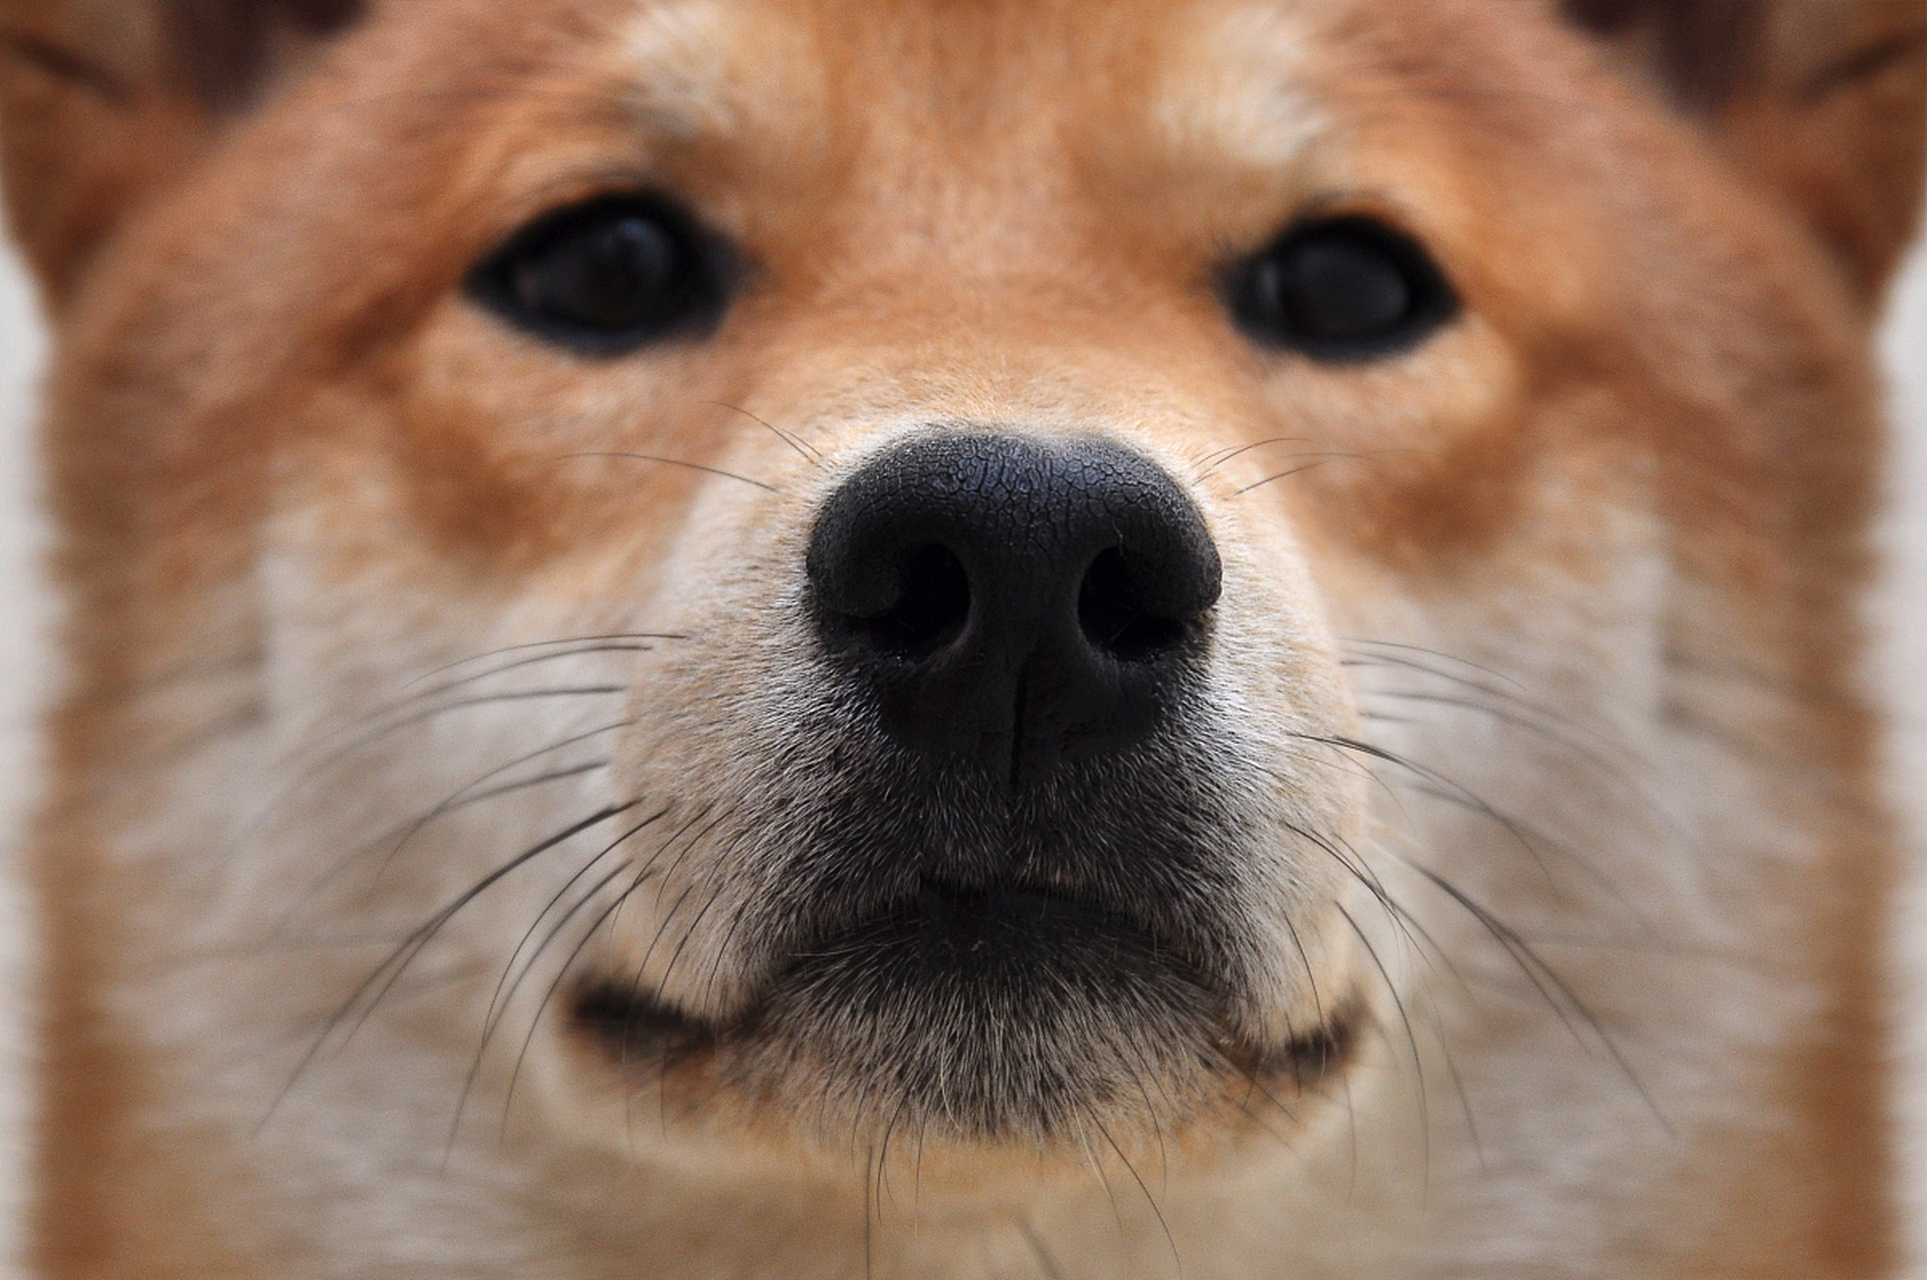 著名表情包doge原型柴犬kabosu离世,享年18岁 